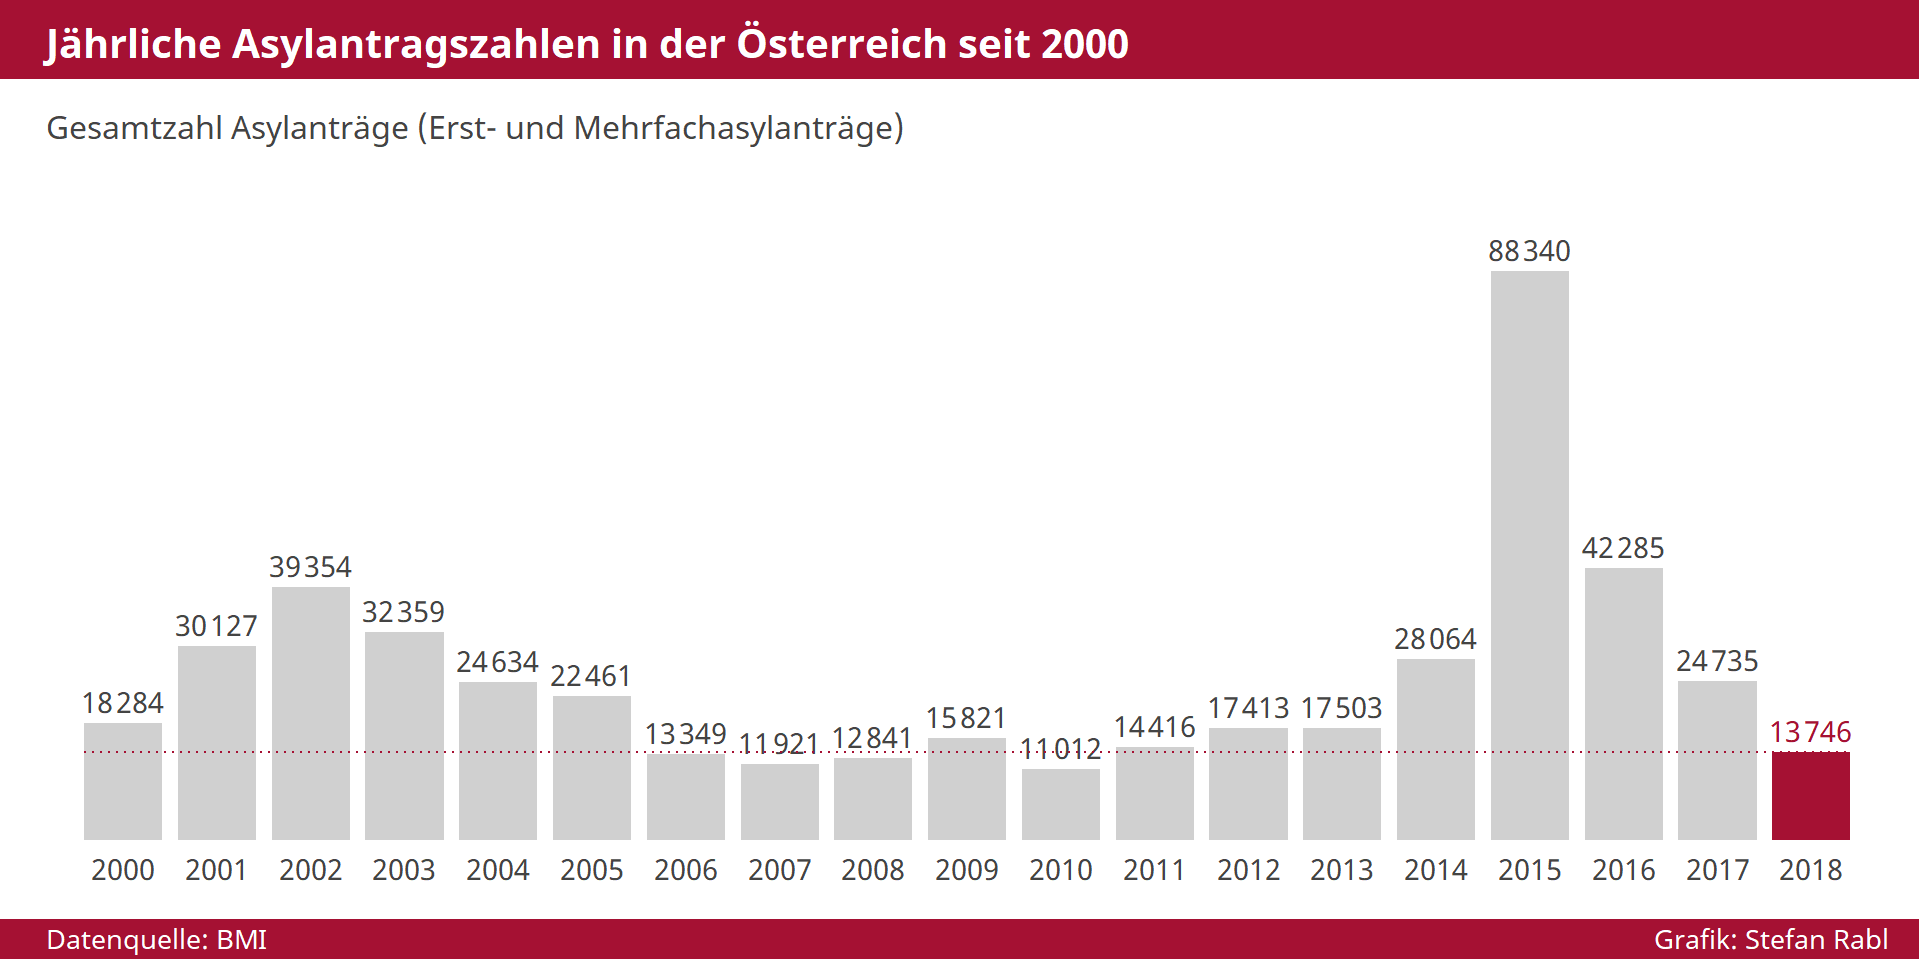 Grafik: Jährliche Asylanträge in Österreich